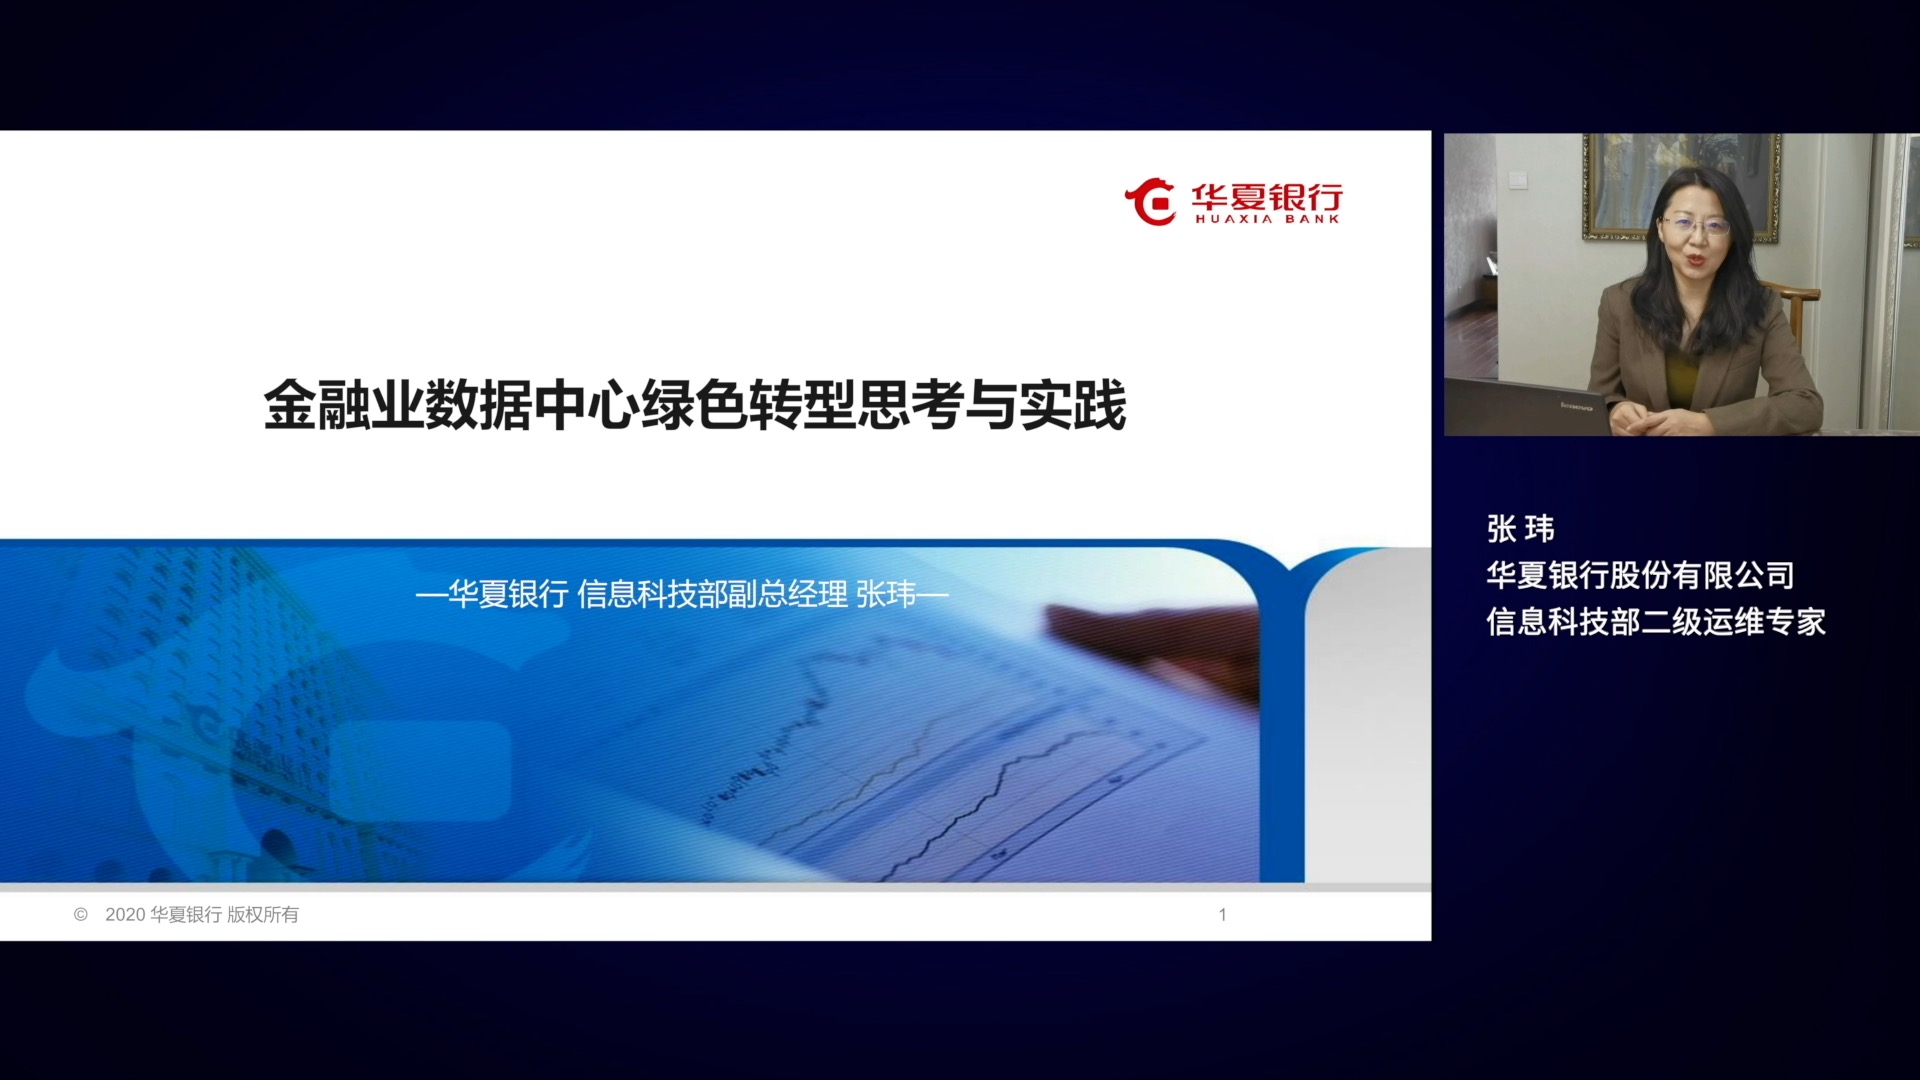 华夏银行股份有限公司信息科技部二级运维专家张玮